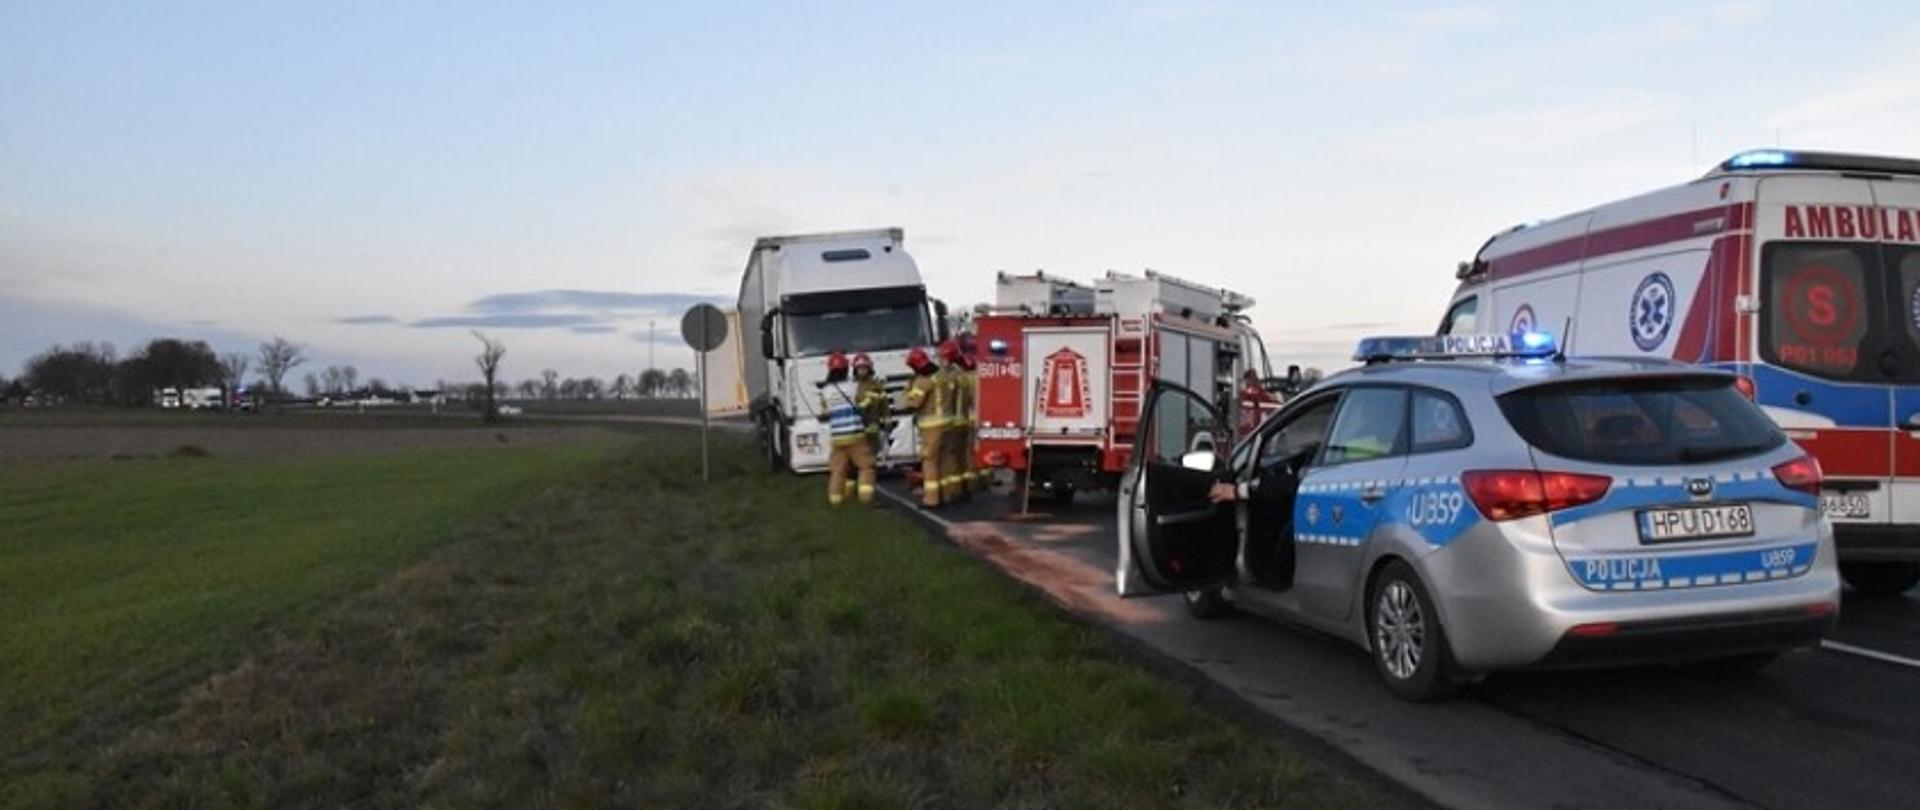 Na zdjęciu strażacy na jezdni, pojazdy strażackie ambulans oraz radiowóz i obok znaku stoi ciężarówka 